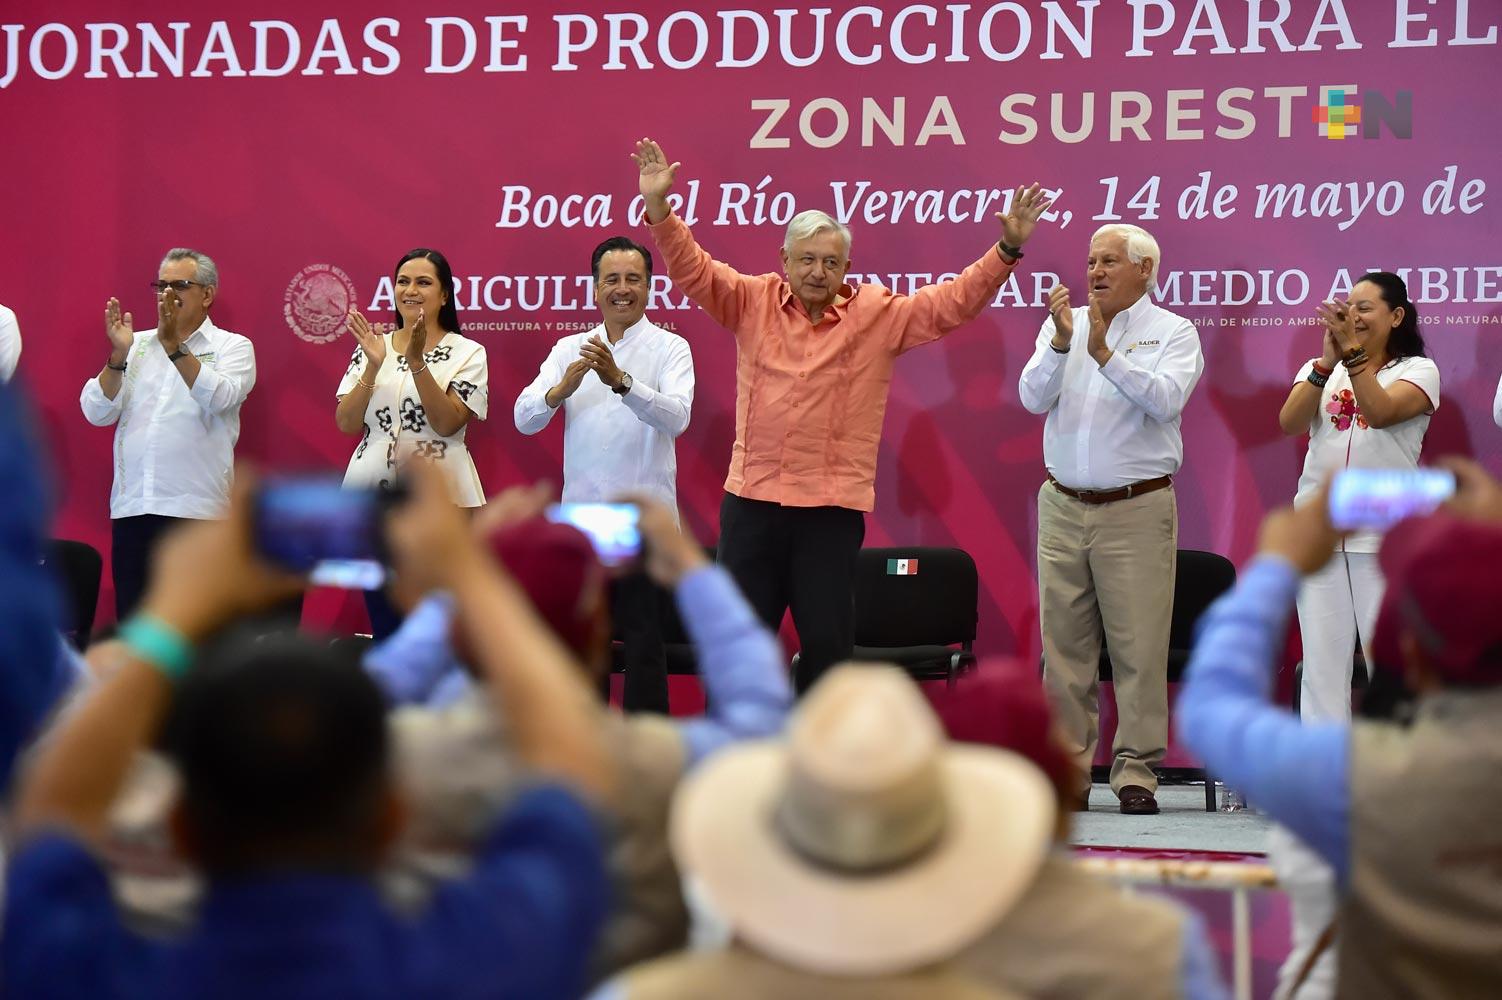 Suma de voluntades ayudará a enfrentar inflación, afirma presidente en campaña de producción para el autoconsumo en Veracruz